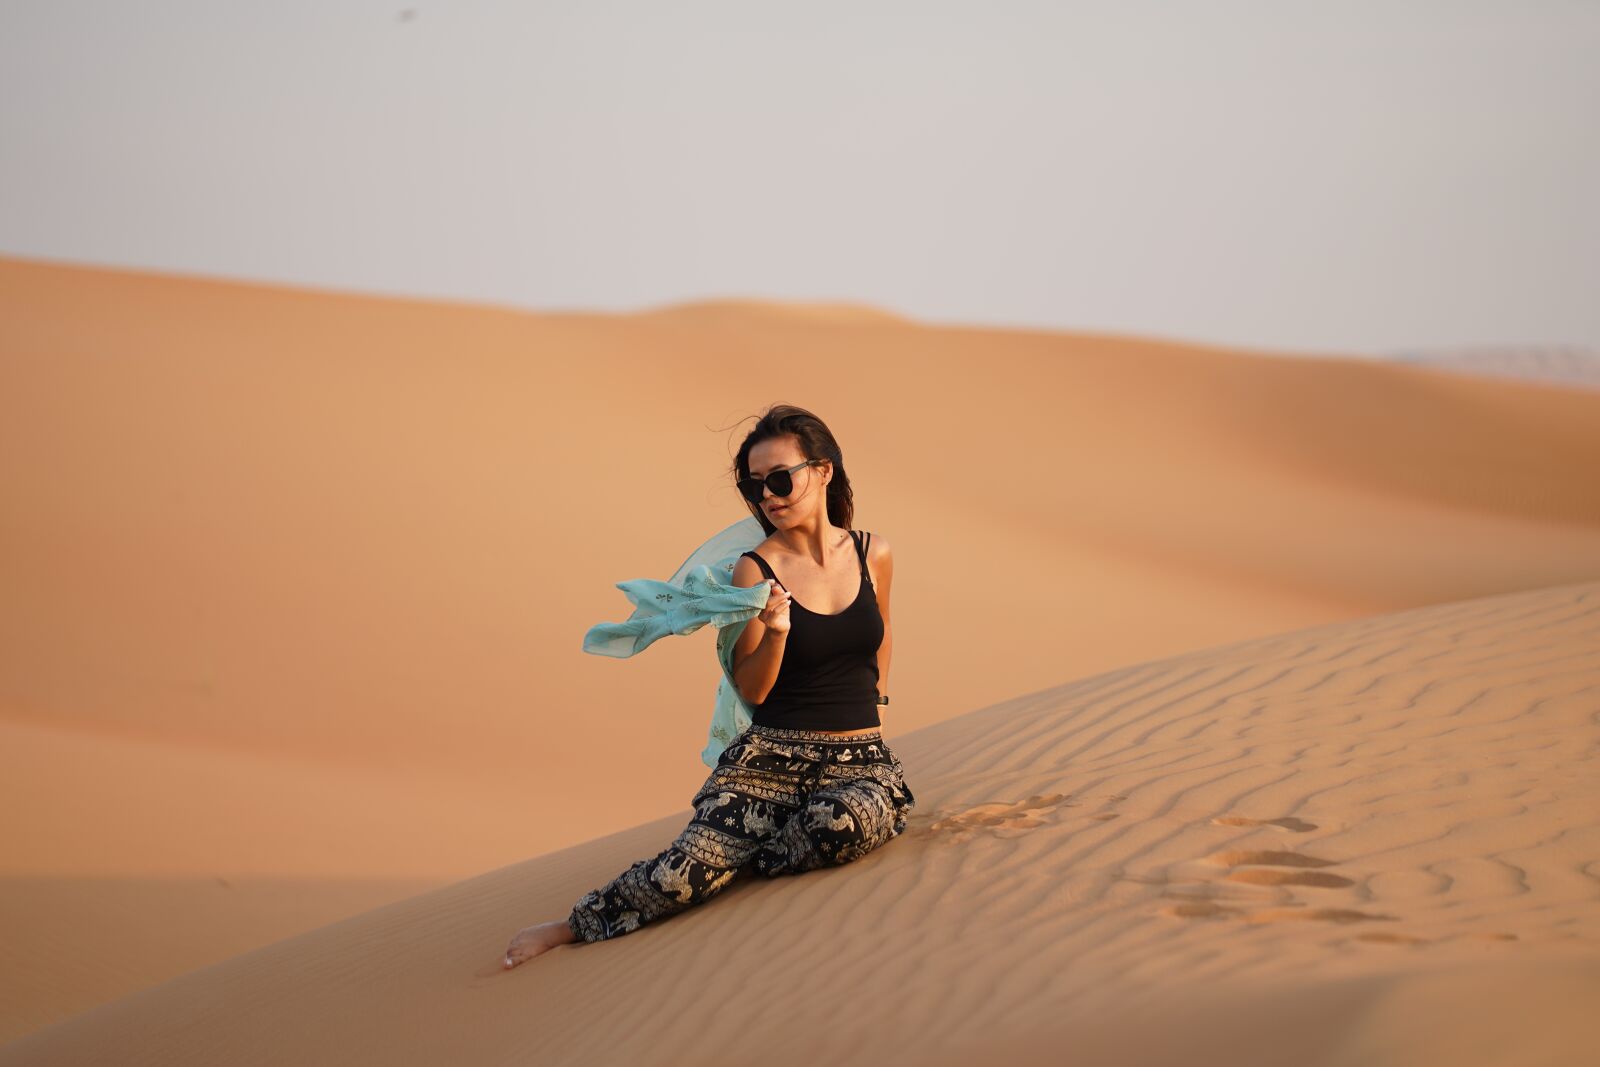 Sony a7 III + Sony FE 85mm F1.8 sample photo. Dubai, desert, girl photography